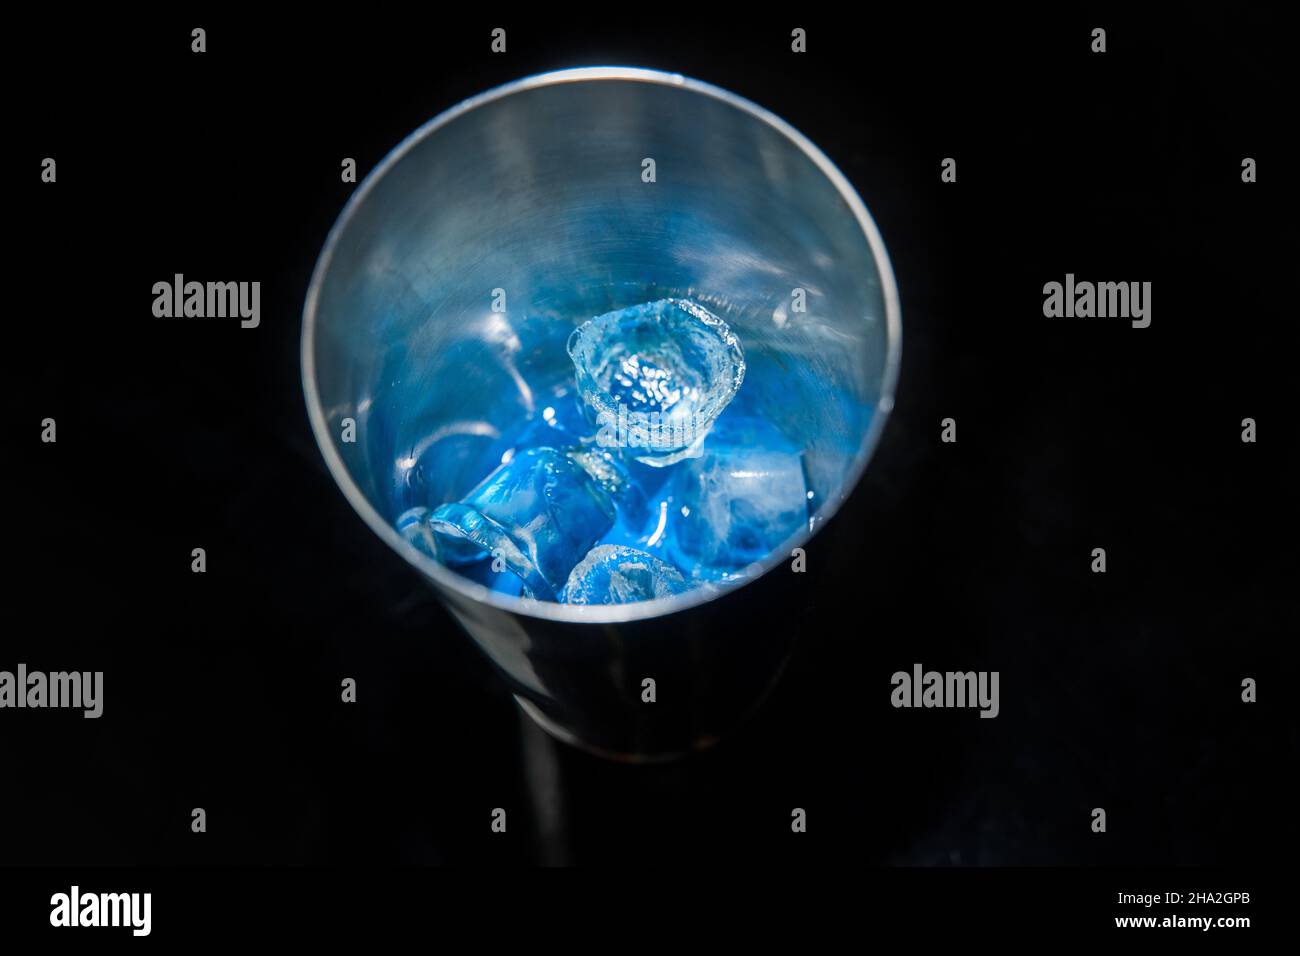 Blauer, kalter Sirup mit Eis in einem Werkzeug zum Mischen und Herstellen alkoholischer Cocktails Shaker auf schwarzem Hintergrund, Nahaufnahme. Stockfoto